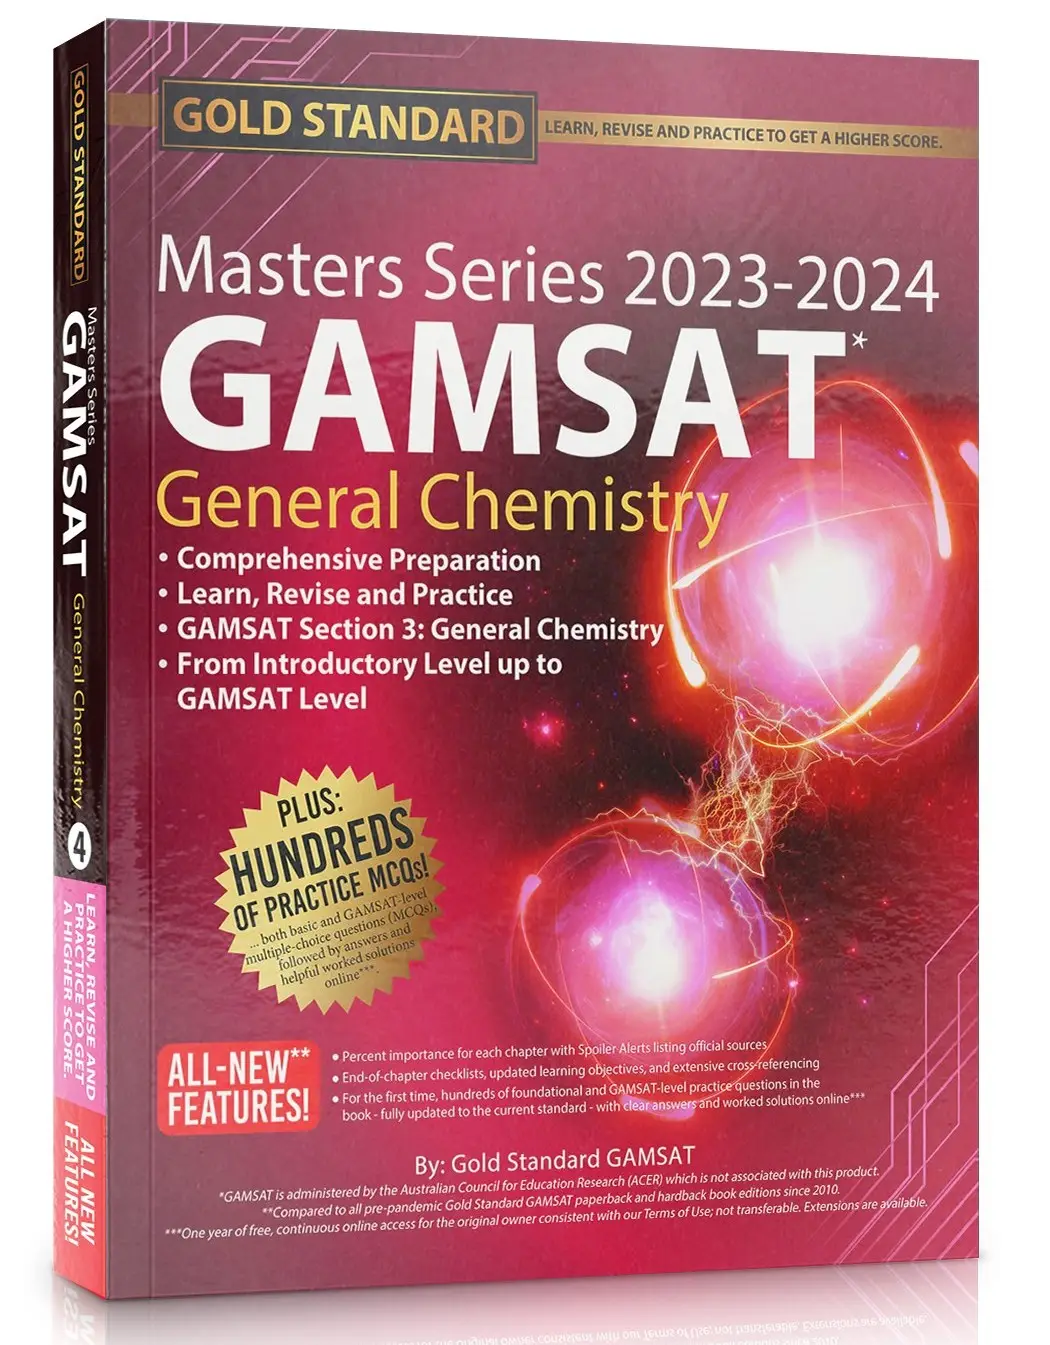 2023-2024 GAMSAT Masters Series General Chemistry